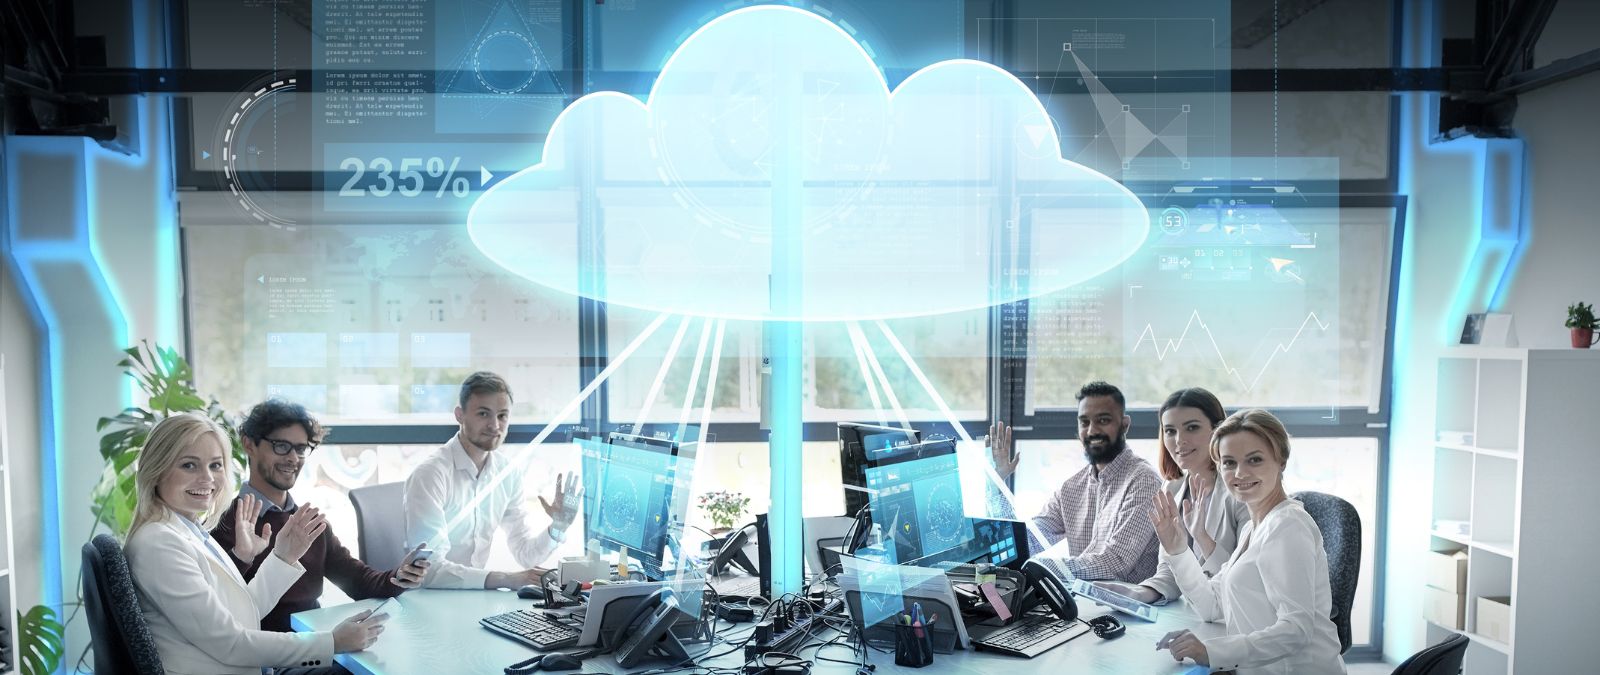 Die Vor- und Nachteile von Cloud Computing für Unternehmen